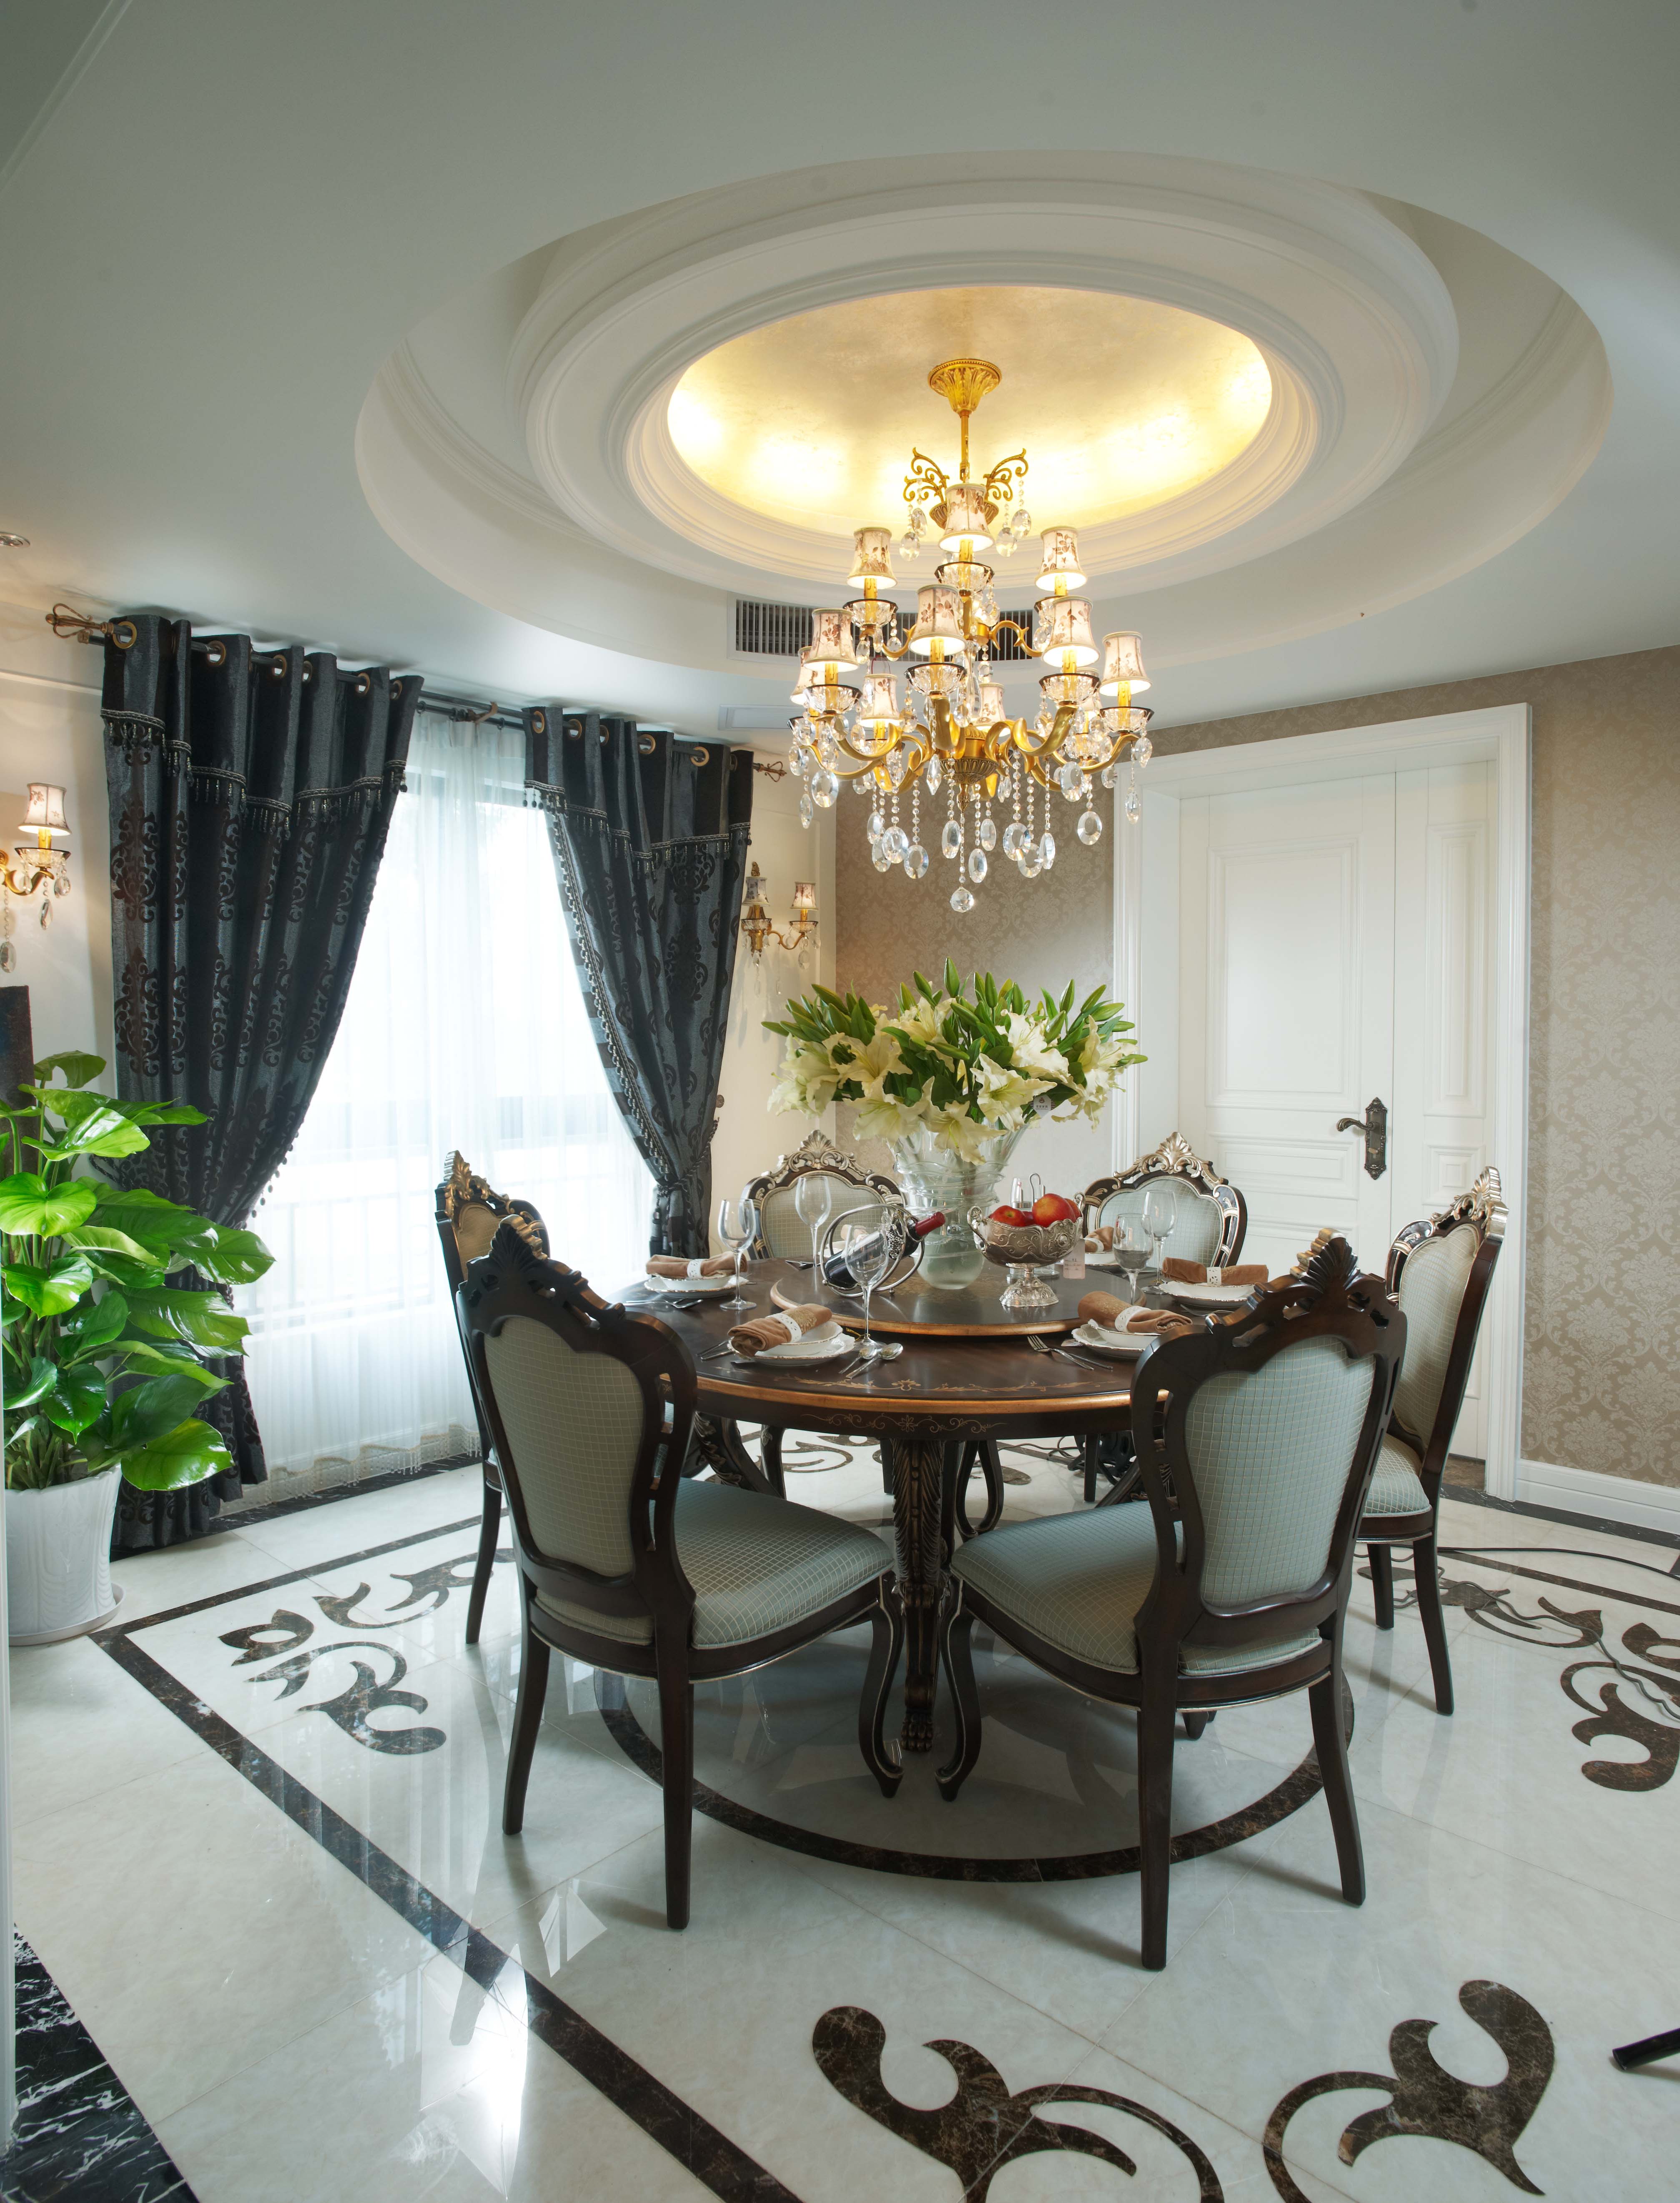 欧式 别墅 客厅 卧室 厨房 餐厅图片来自大金家用中央空调在奢华欧式别墅中央空调装修案例的分享